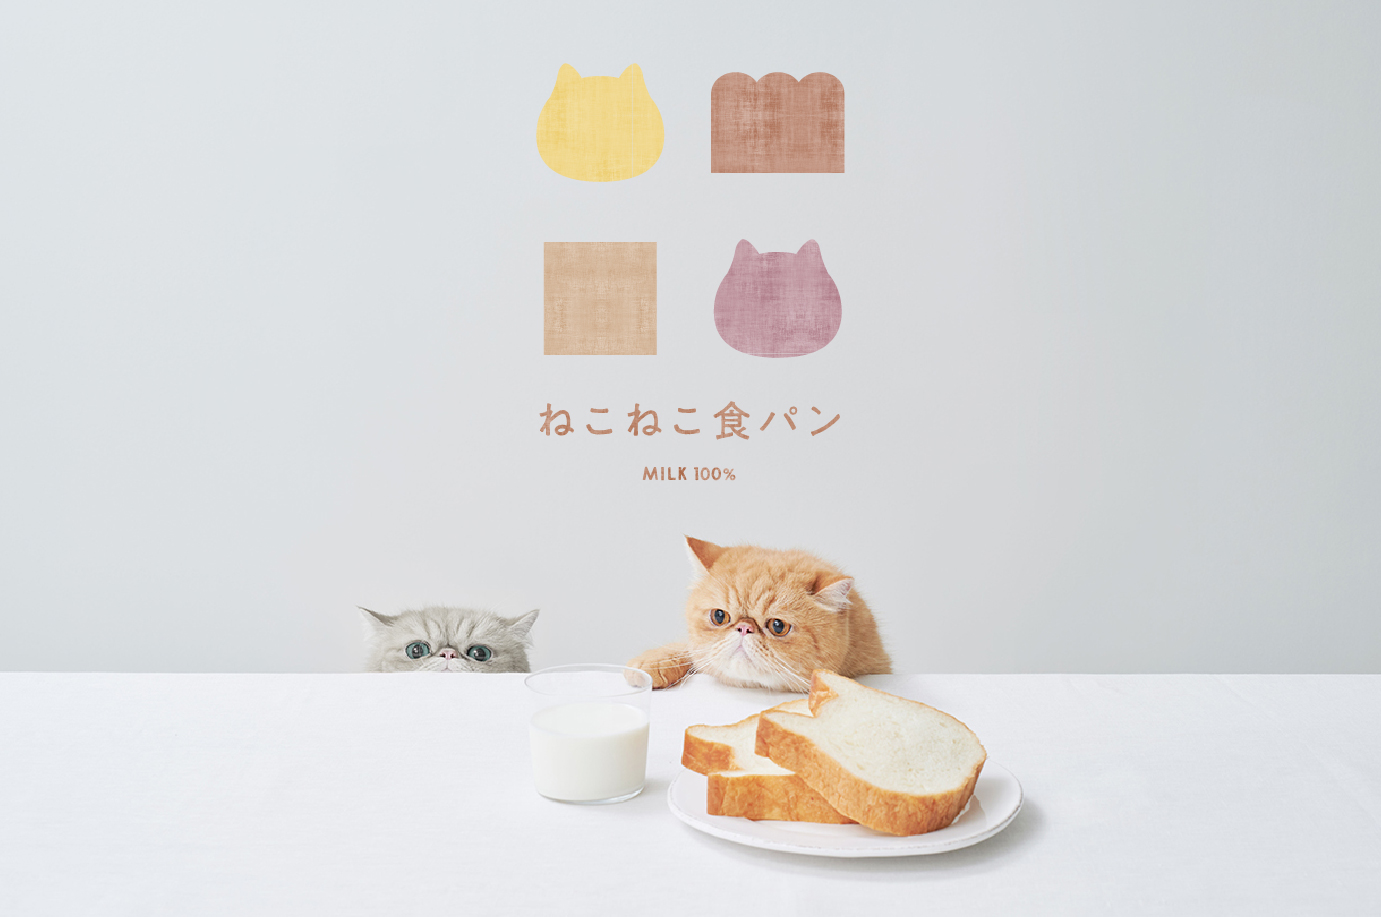 ねこの形の高級食パン専門店 ねこねこ食パン が宮城県 イオンモール名取に登場 Newscast